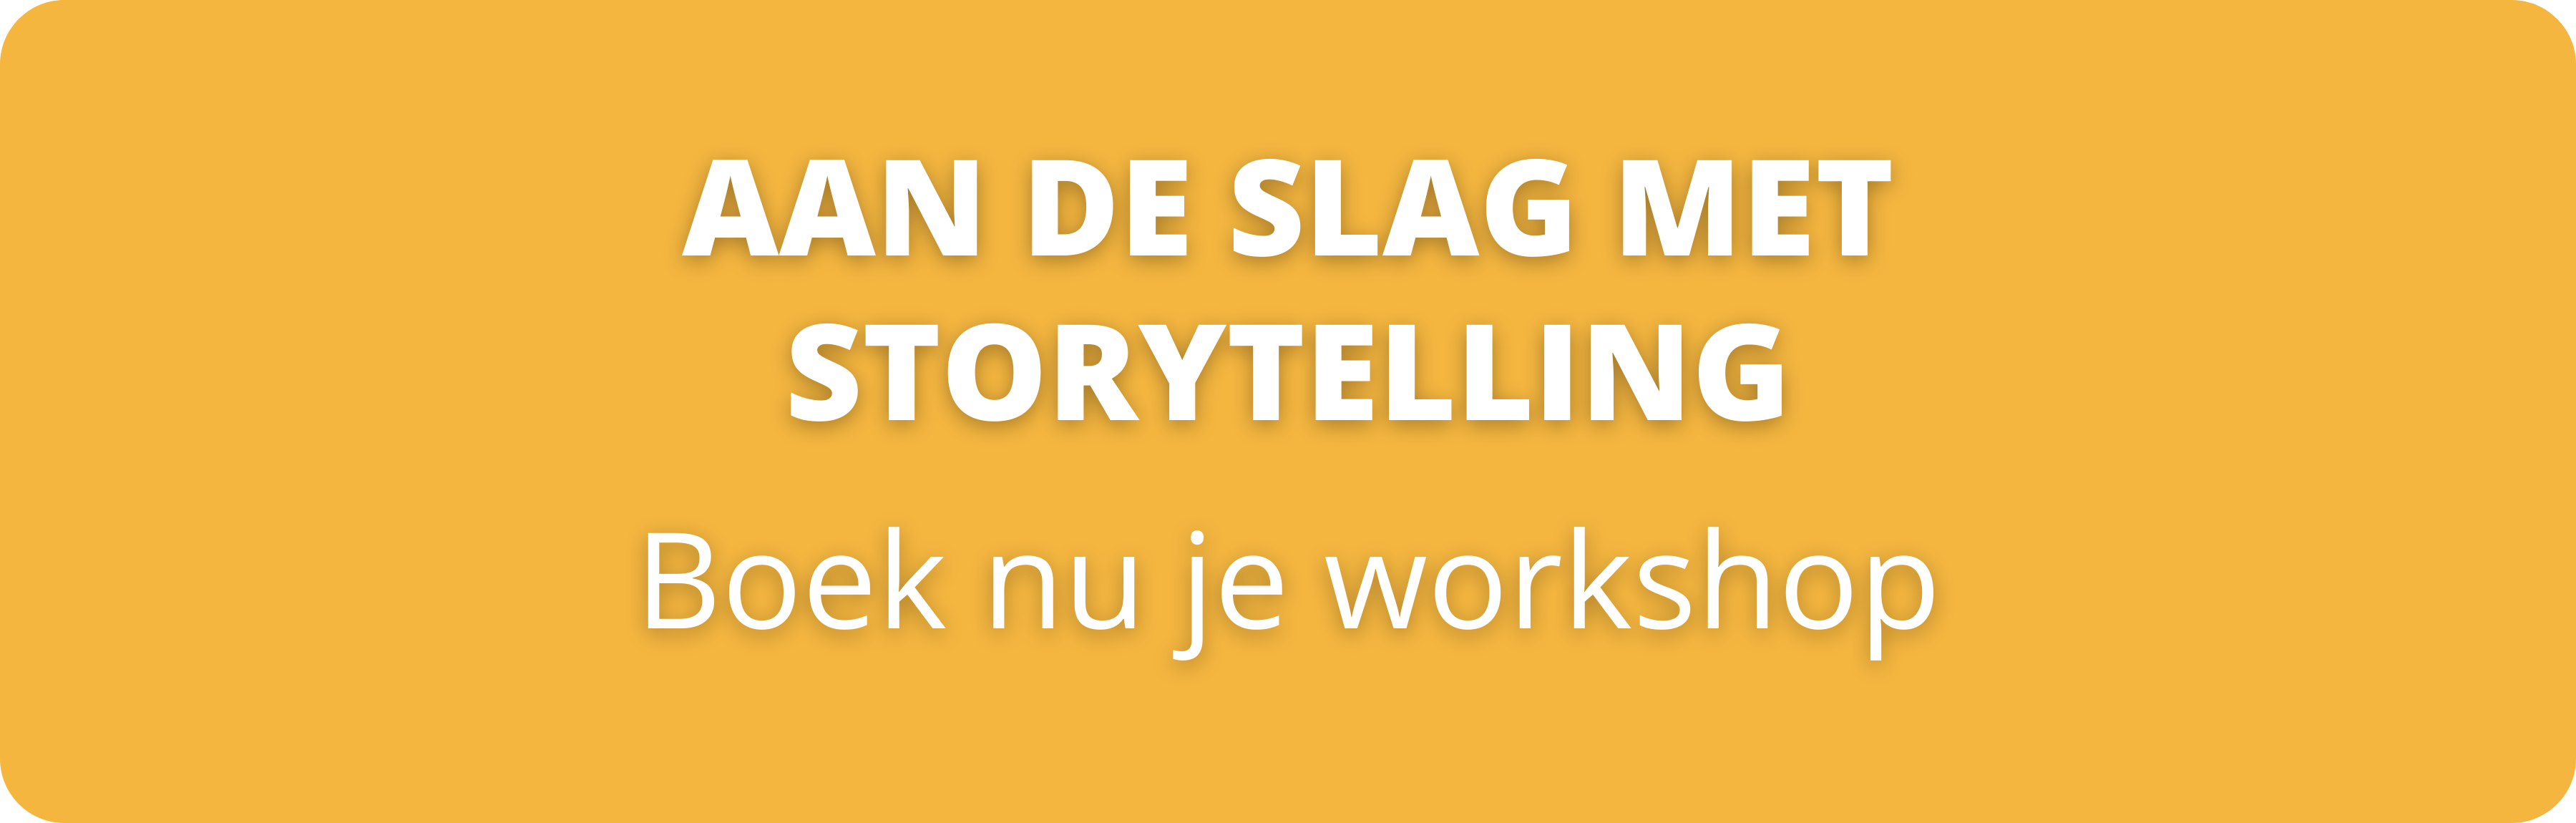 Workshop aan de slag met storytelling